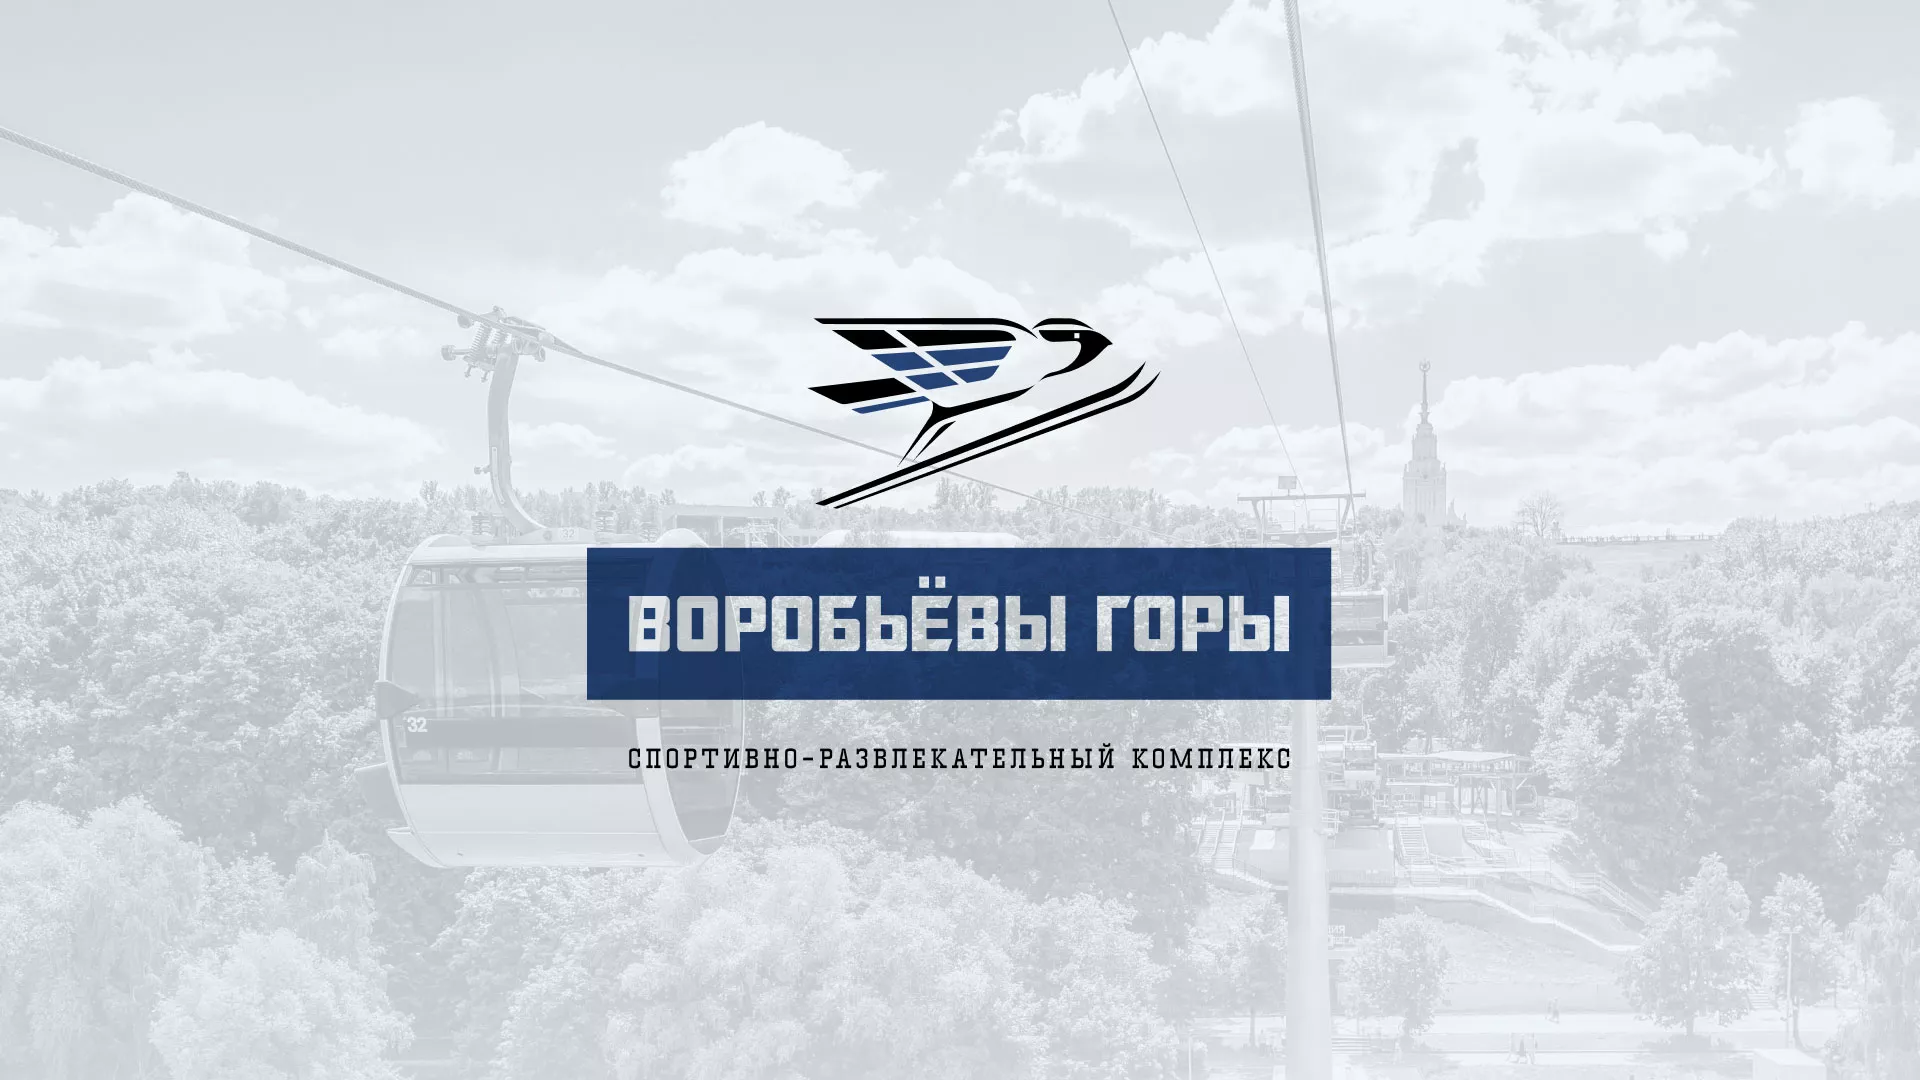 Разработка сайта в Кореновске для спортивно-развлекательного комплекса «Воробьёвы горы»